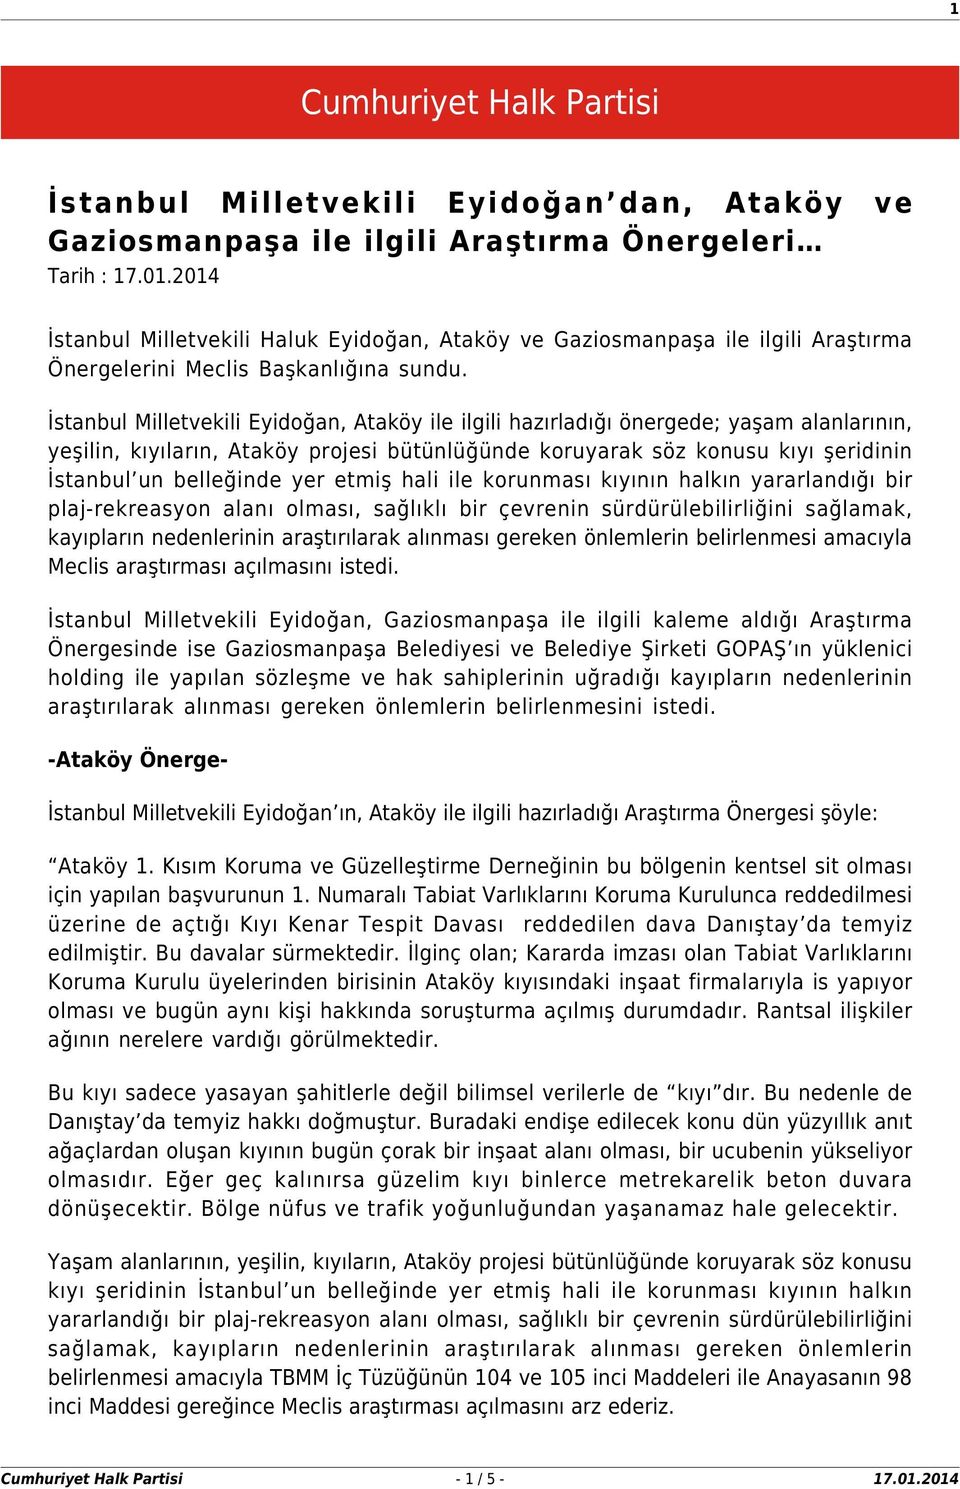 İstanbul Milletvekili Eyidoğan, Ataköy ile ilgili hazırladığı önergede; yaşam alanlarının, yeşilin, kıyıların, Ataköy projesi bütünlüğünde koruyarak söz konusu kıyı şeridinin İstanbul un belleğinde